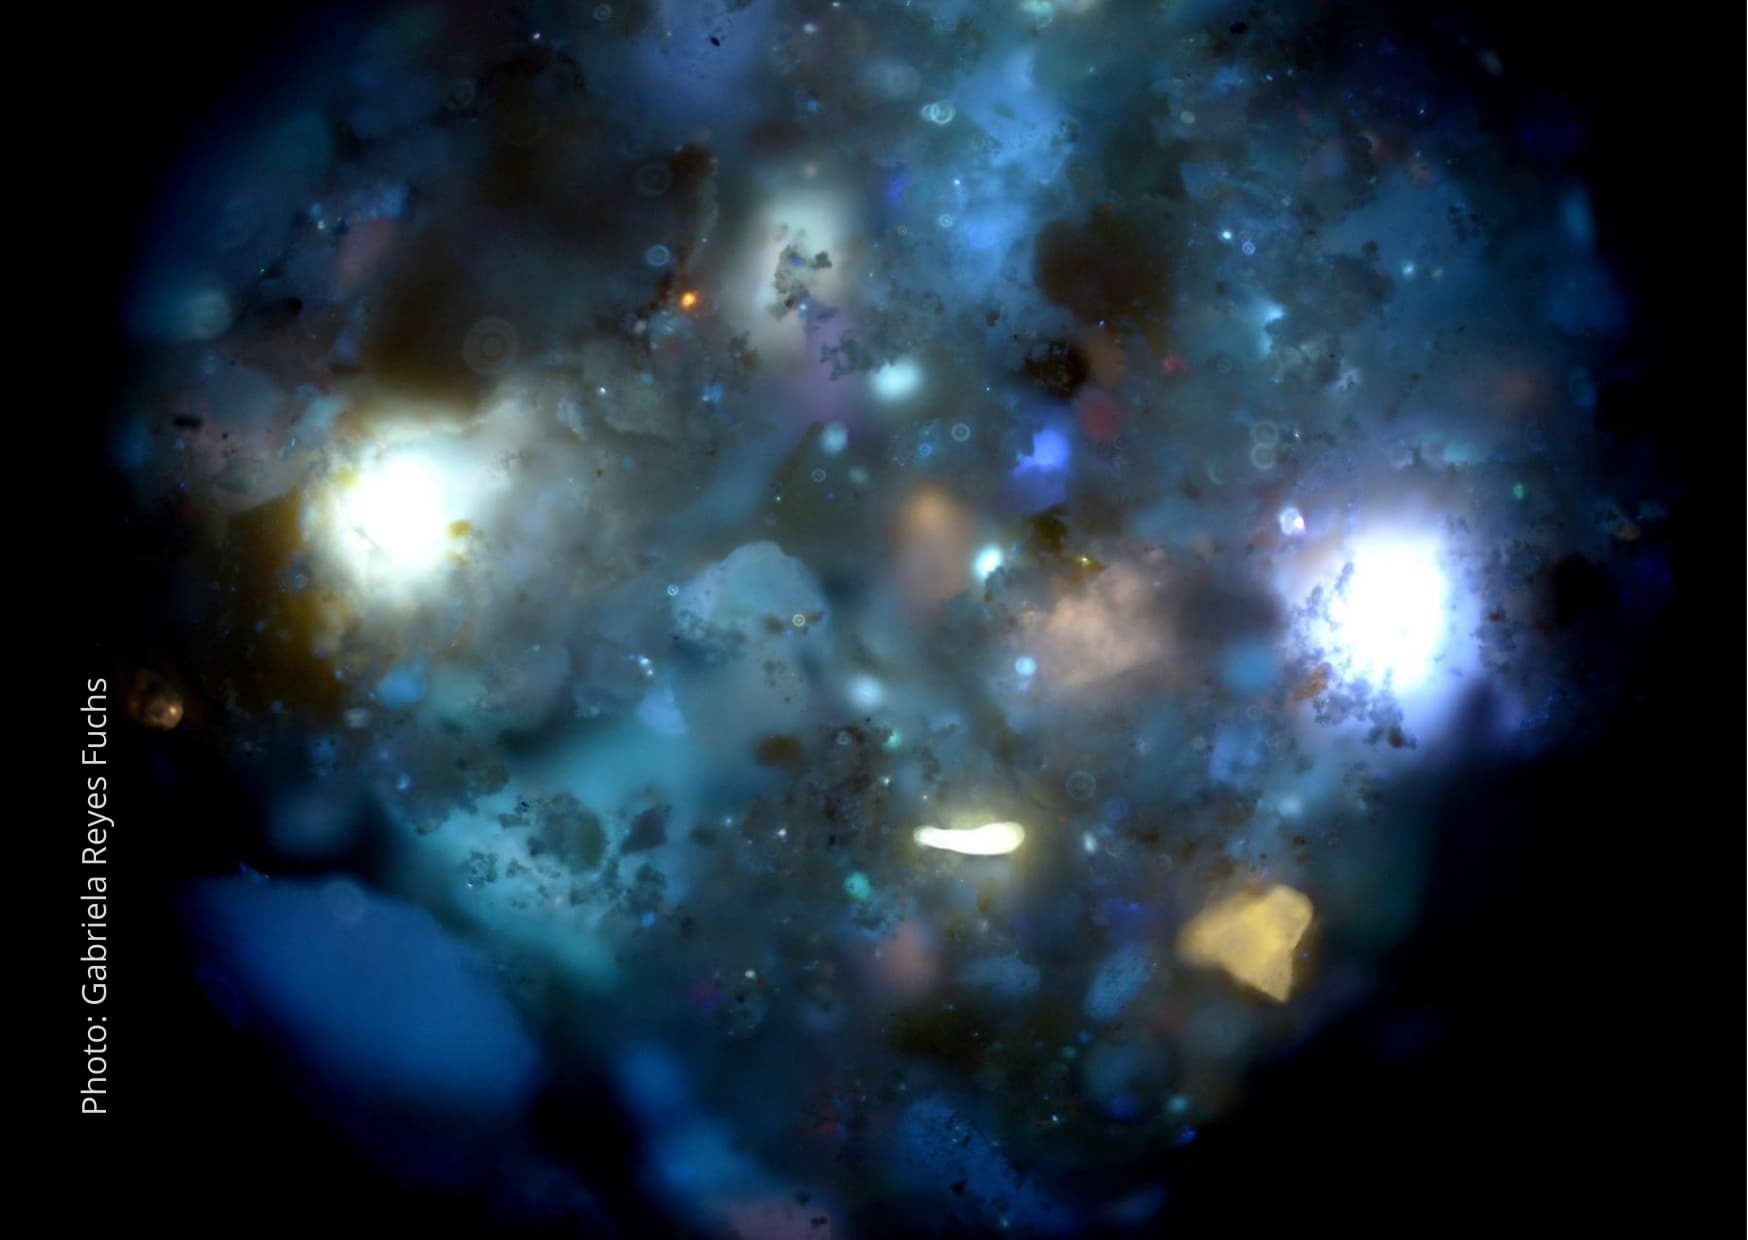 Celebruj galaktyka Gabriela Reyes Fuchs - Gwiezdna galaktyka jest w każdym z nas